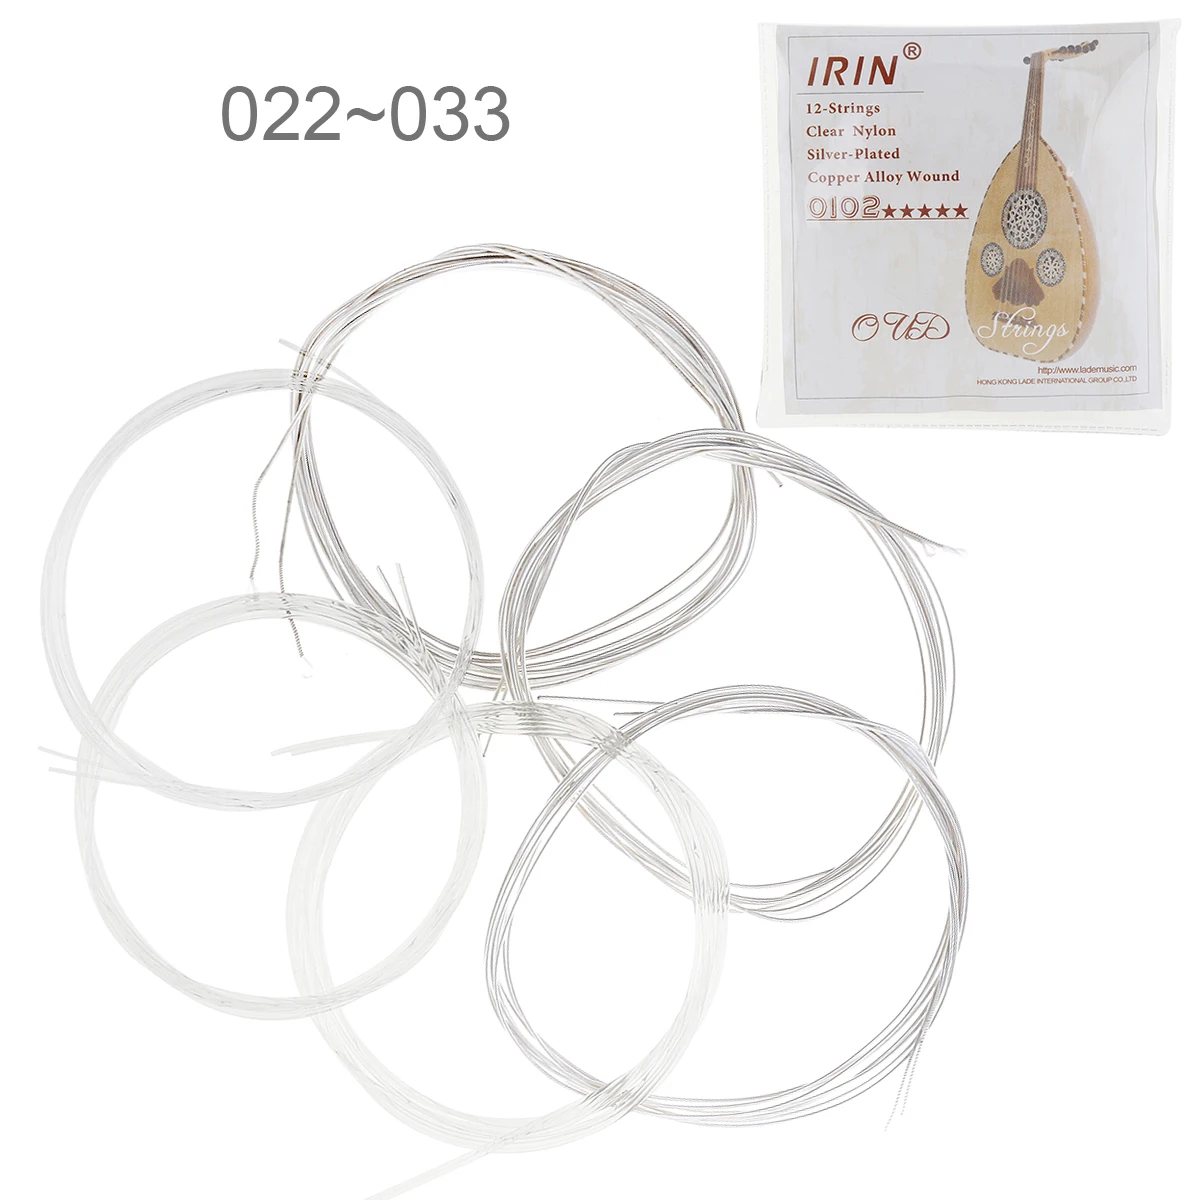 6 шт./лот Oud String 022-033 дюймов Прозрачный нейлон посеребренный медный сплав с полным ярким оттенком